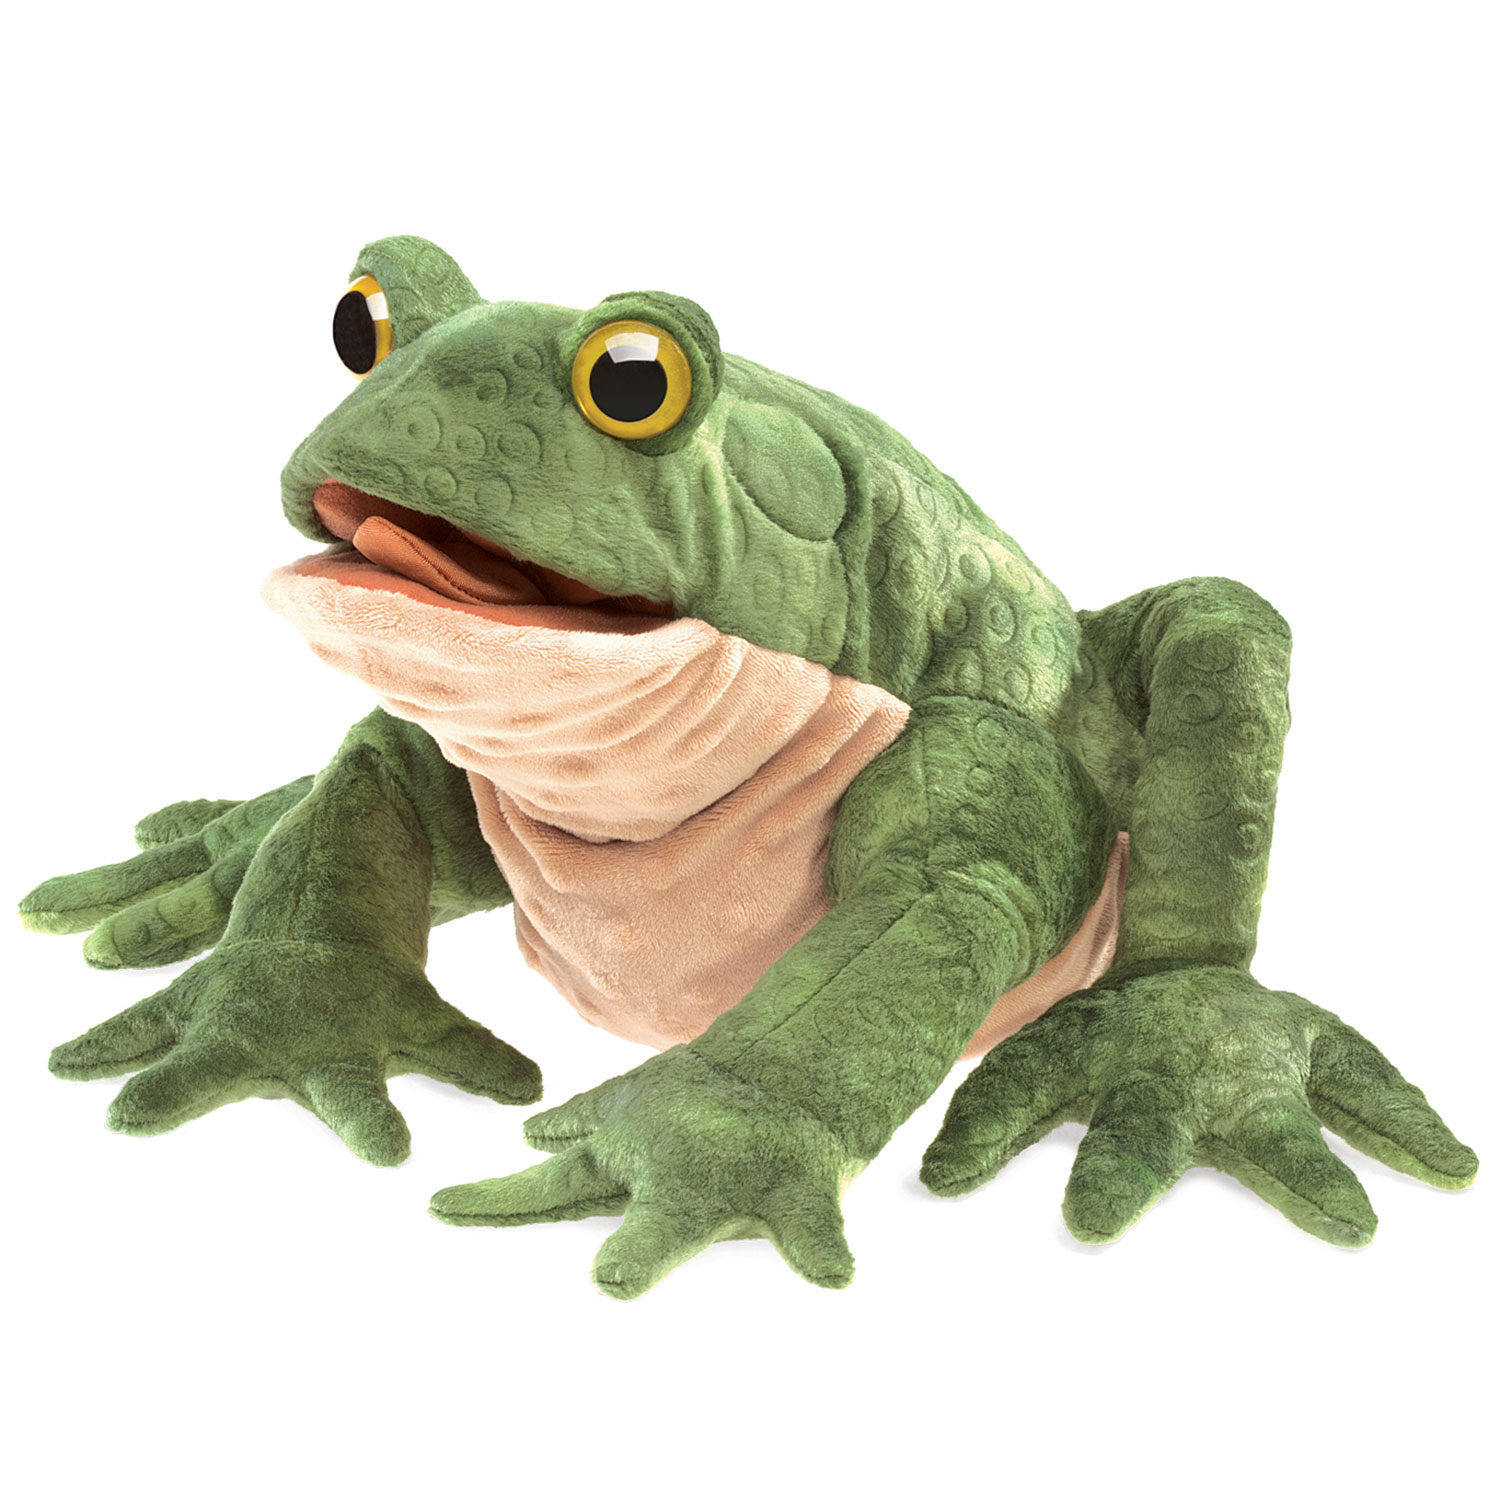 Kröte / Toad